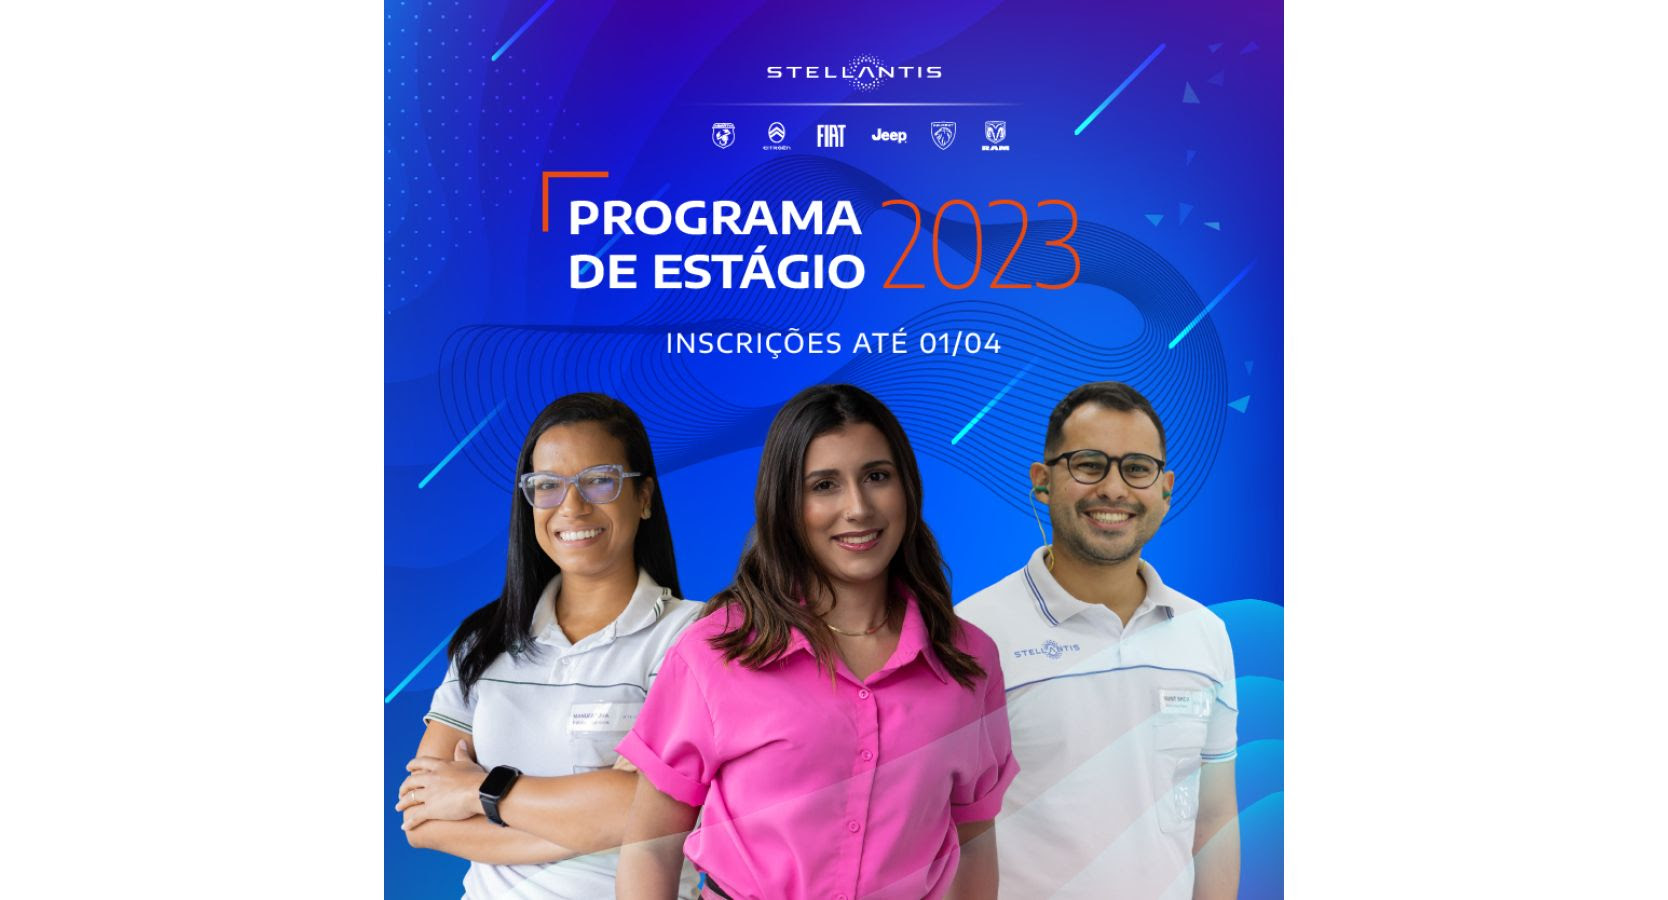 Programa de Estágio da Stellantis, com vagas disponíveis em Itaúna, tem inscrições até 1º de abril